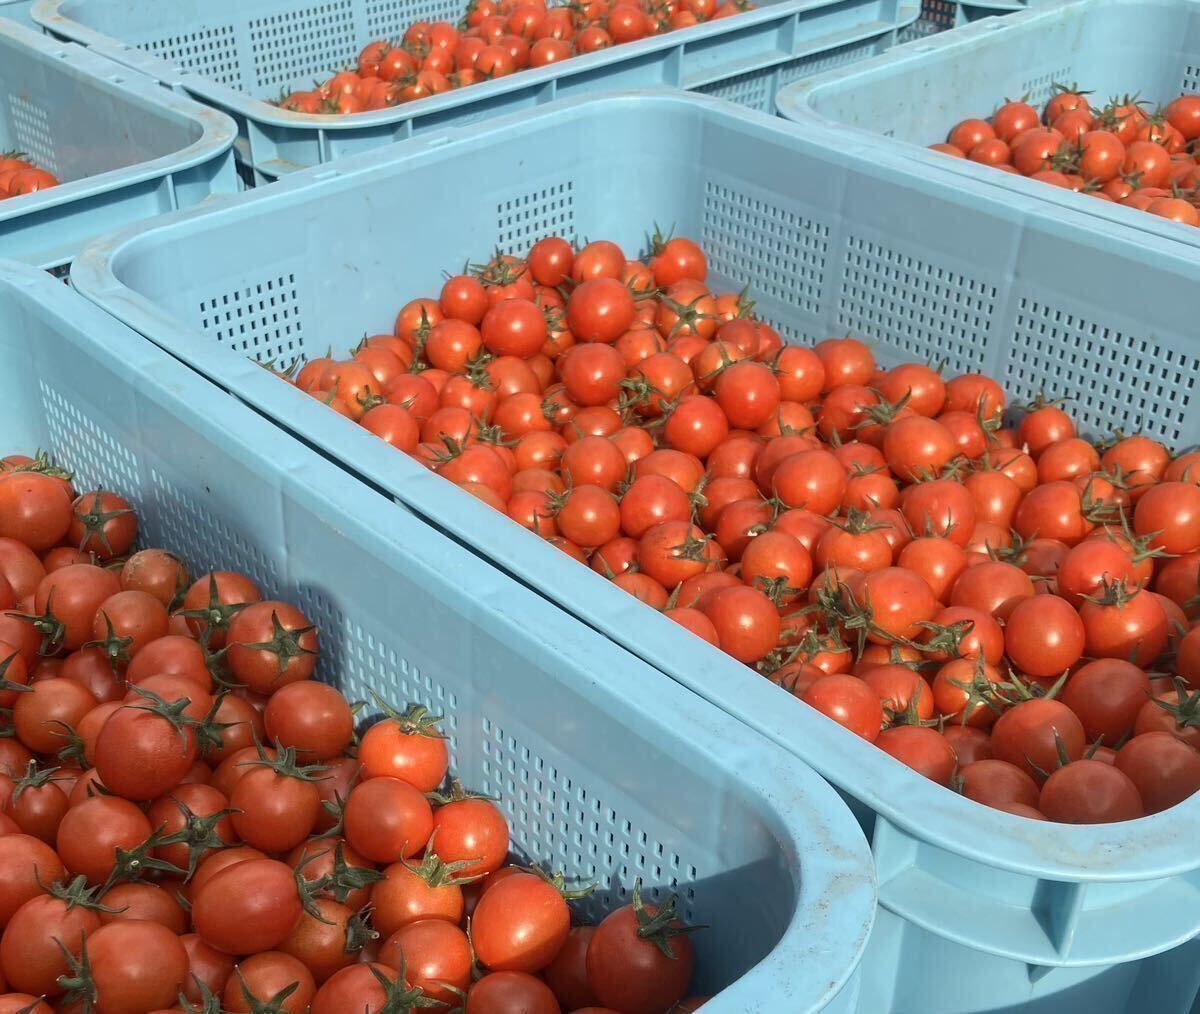 ミニトマト 3キロ 野菜 熊本産 地直送 弁当 おかず トマト ミネラルの画像2